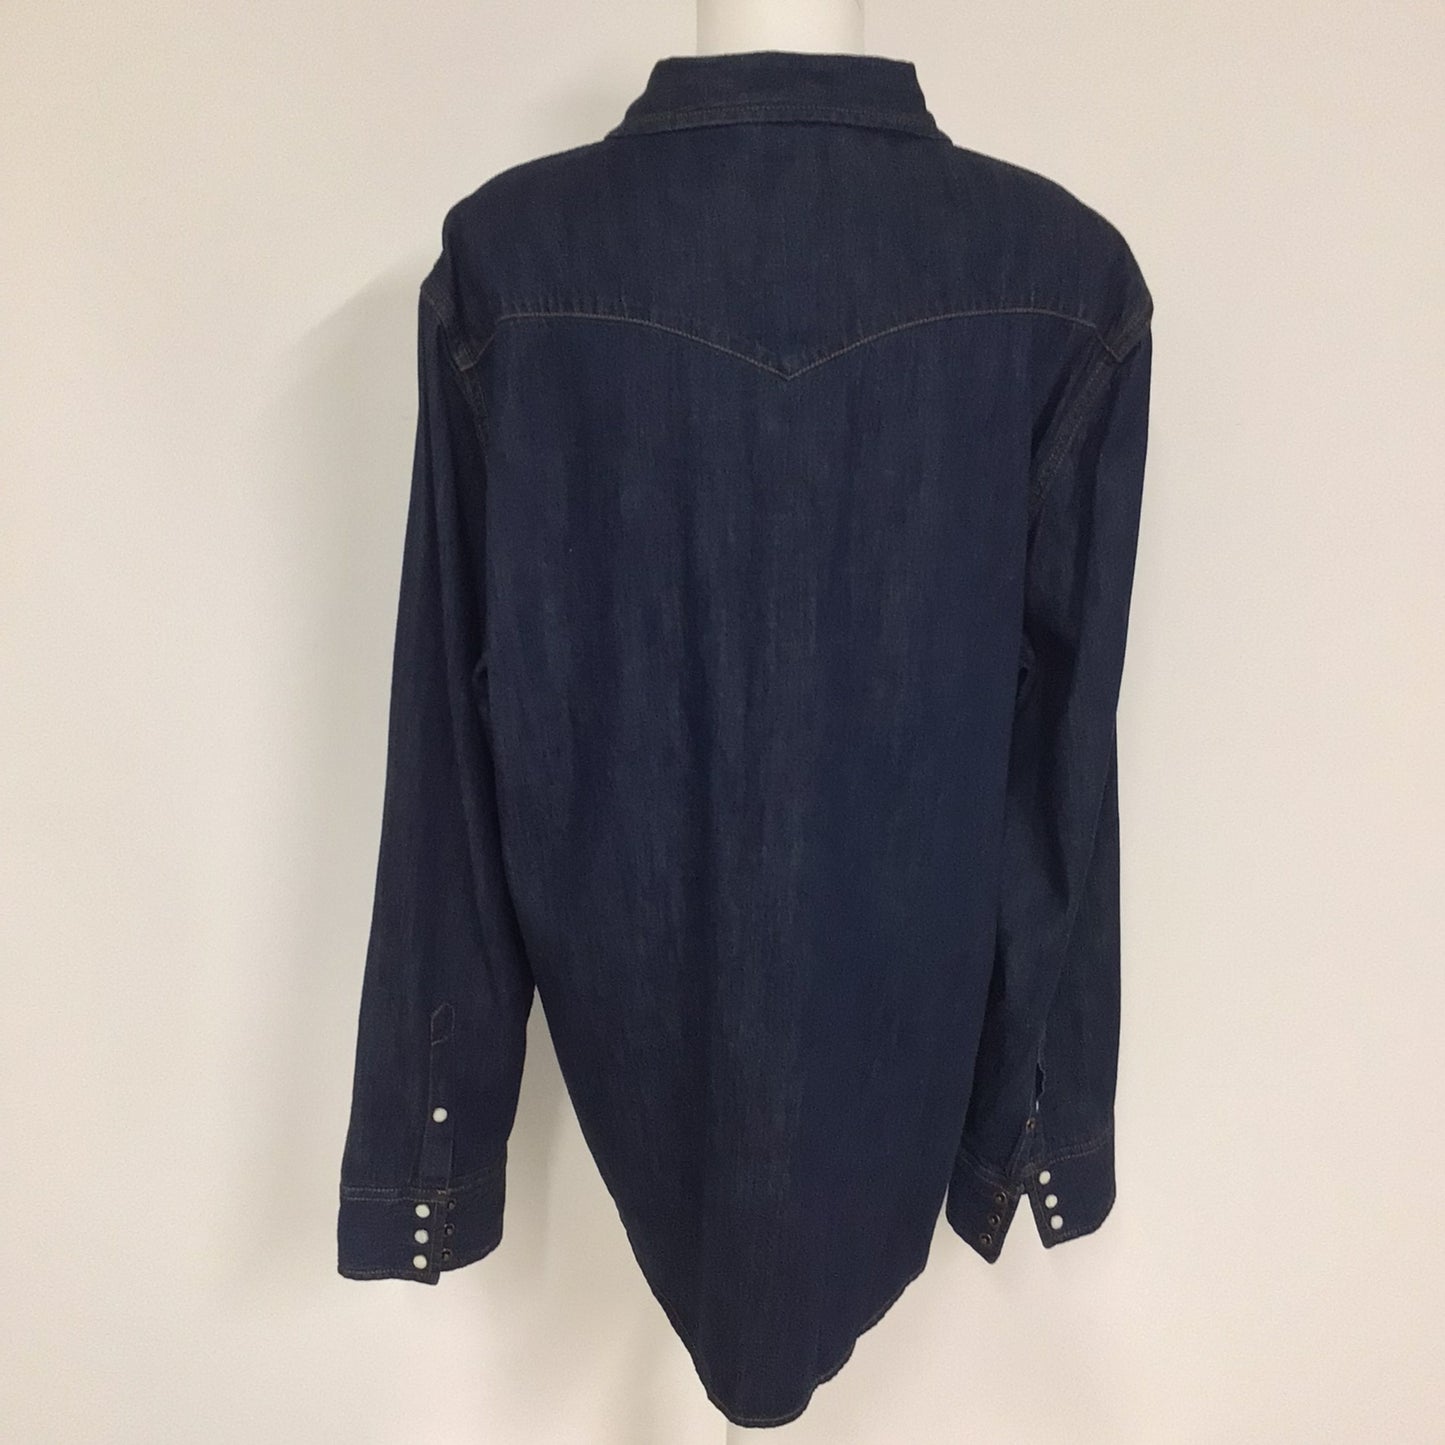 Guess Dark Blue Denim Shirt w/Popper Buttons 100% Cotton Size XL